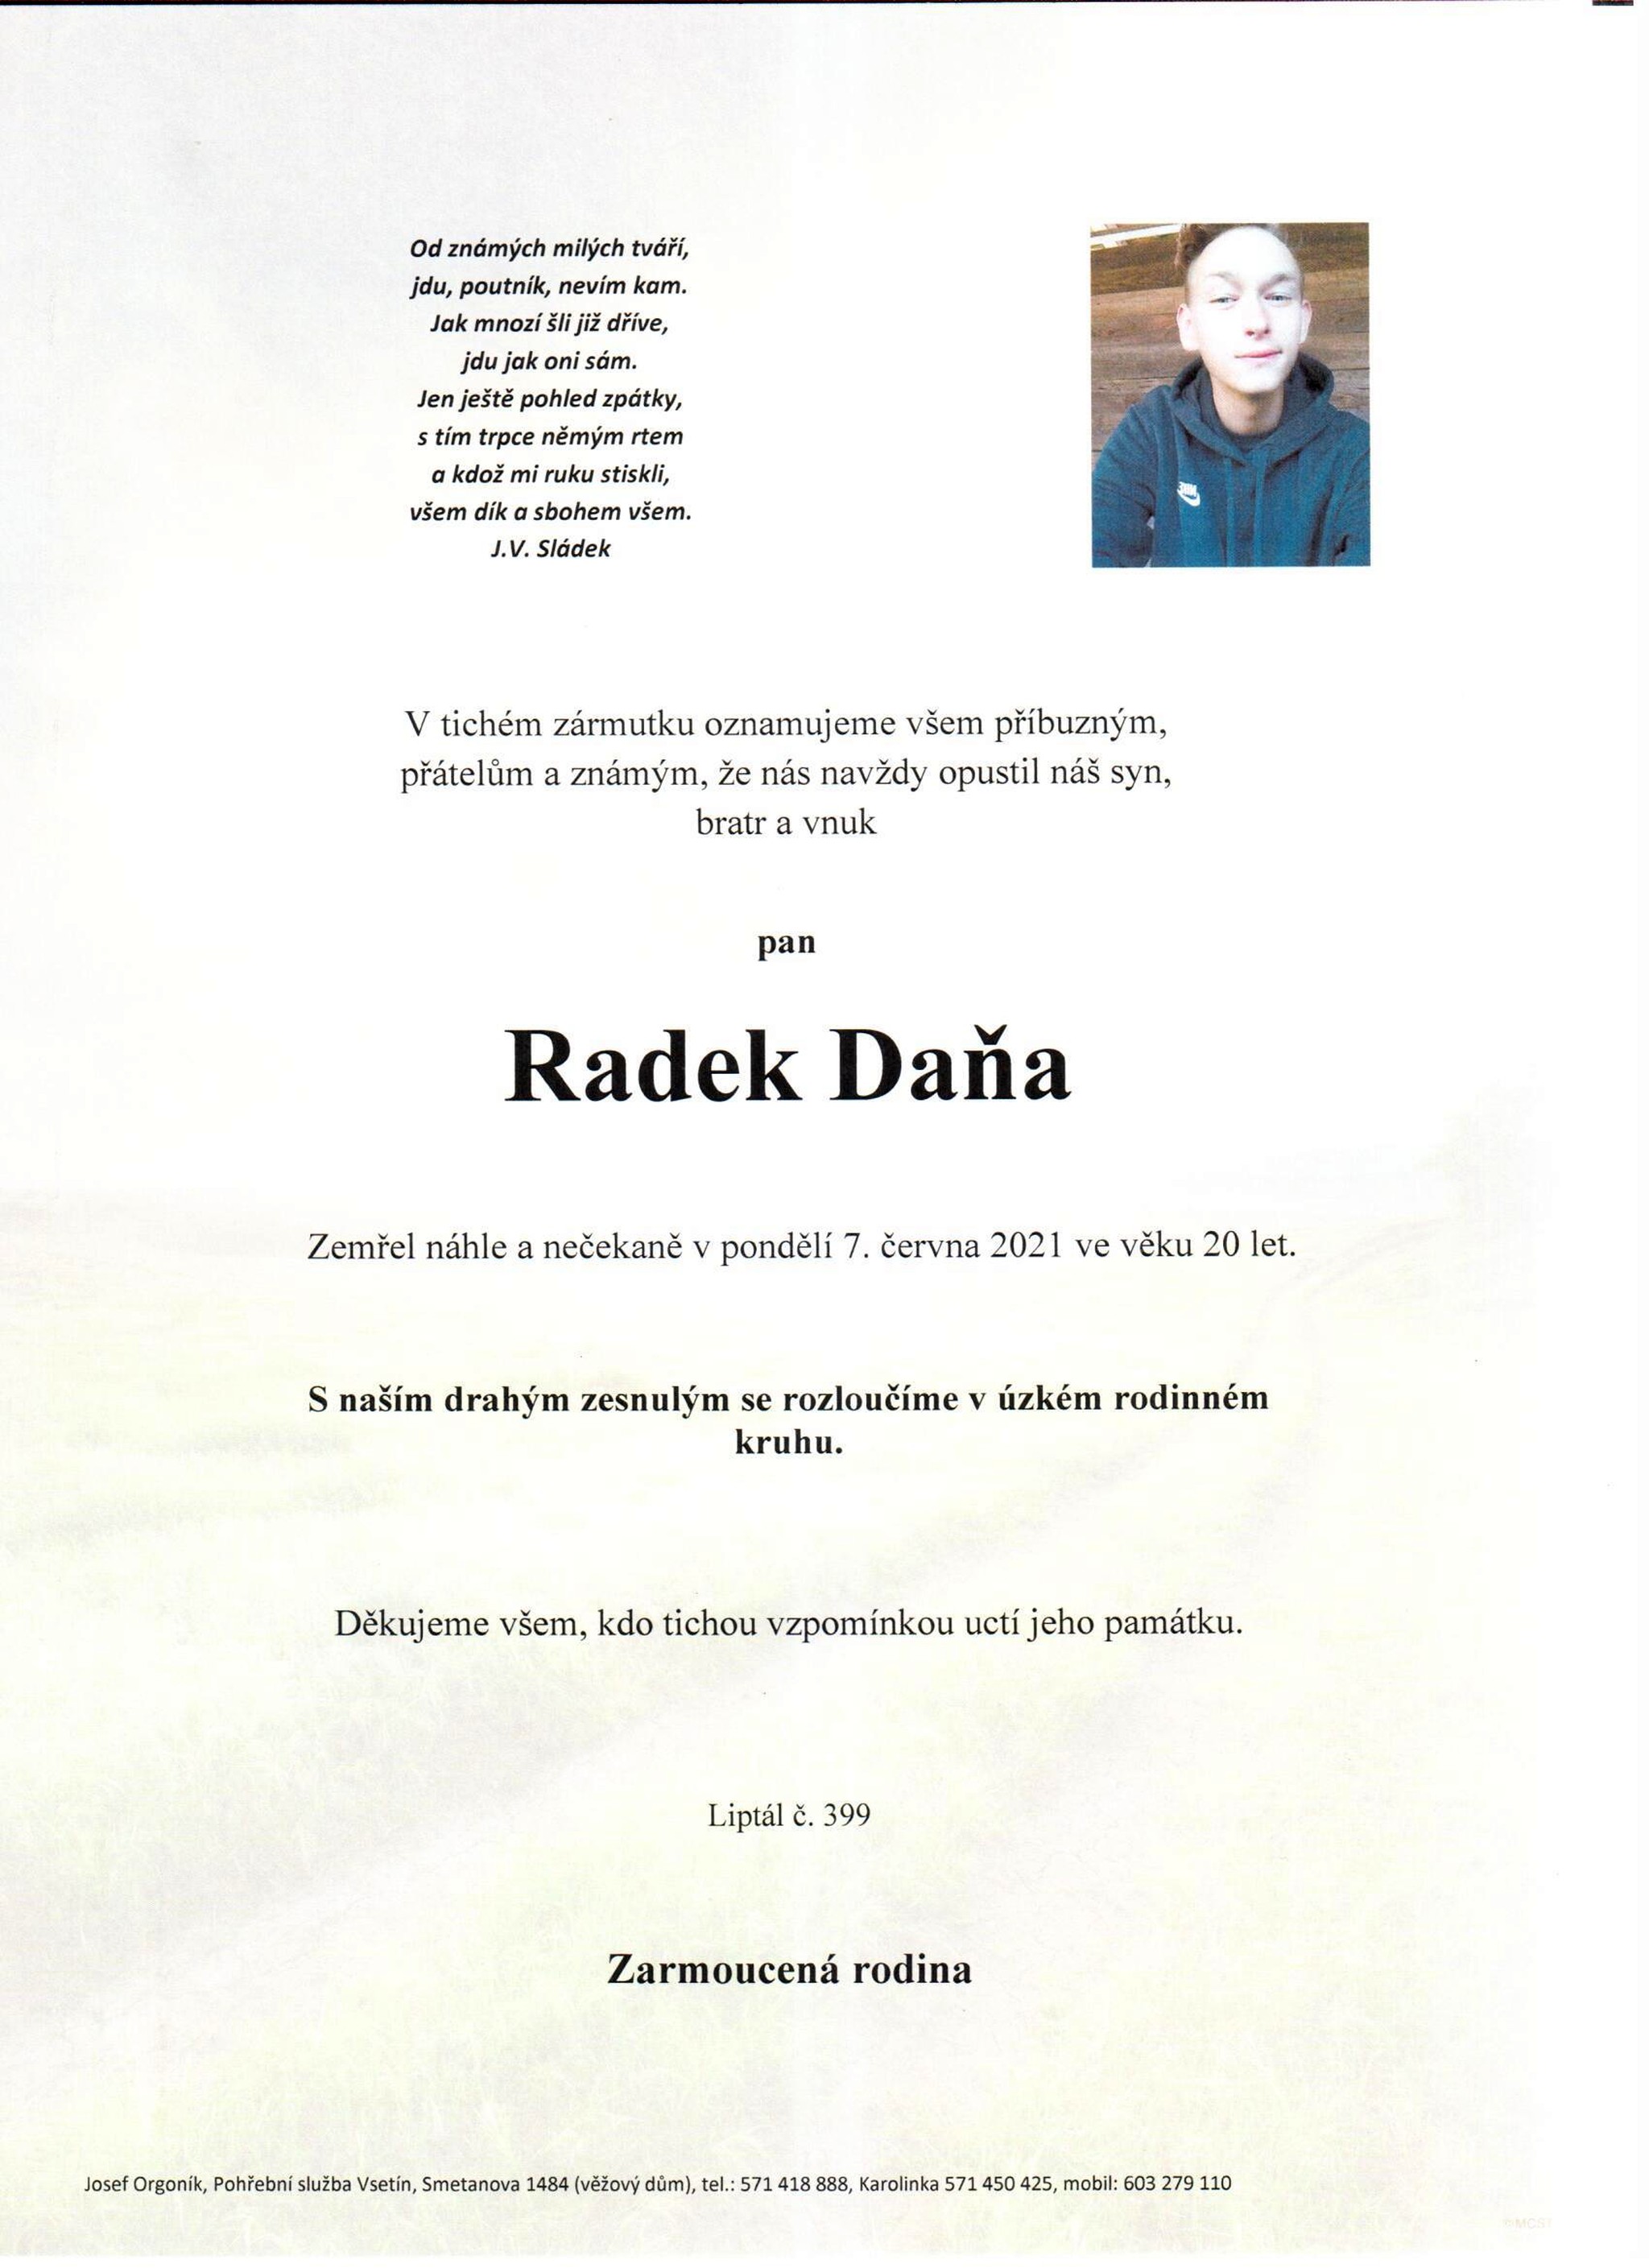 Radek Daňa